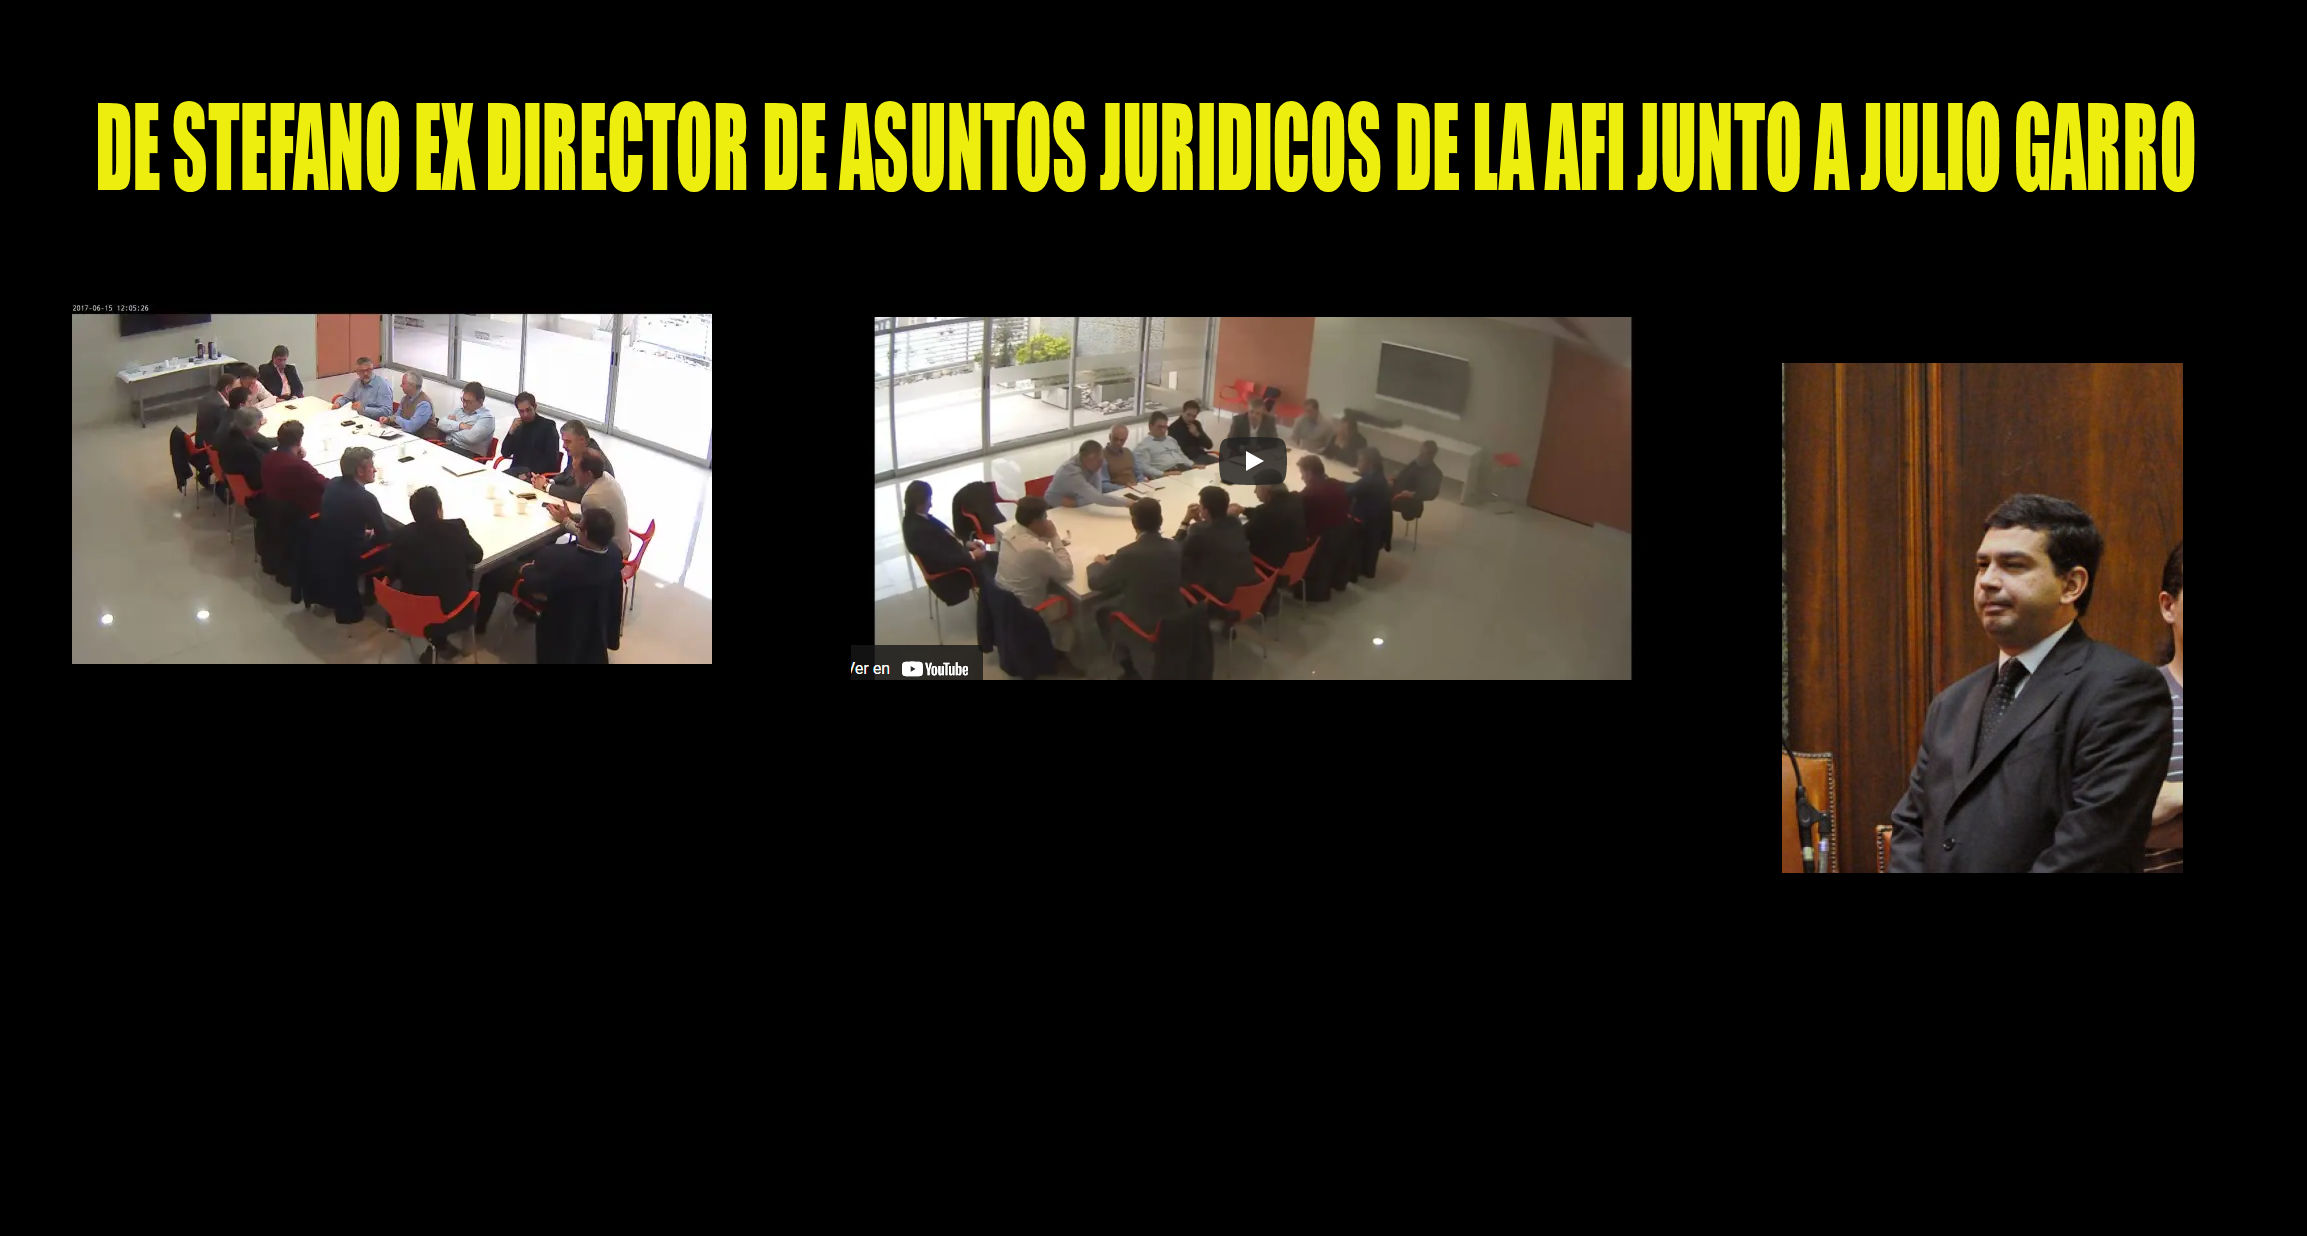 El boludo se olvido de borrarlo:  “Sebastián De Stefano” El ex director de Asuntos Jurídicos la AFI  en el video “gestapo”